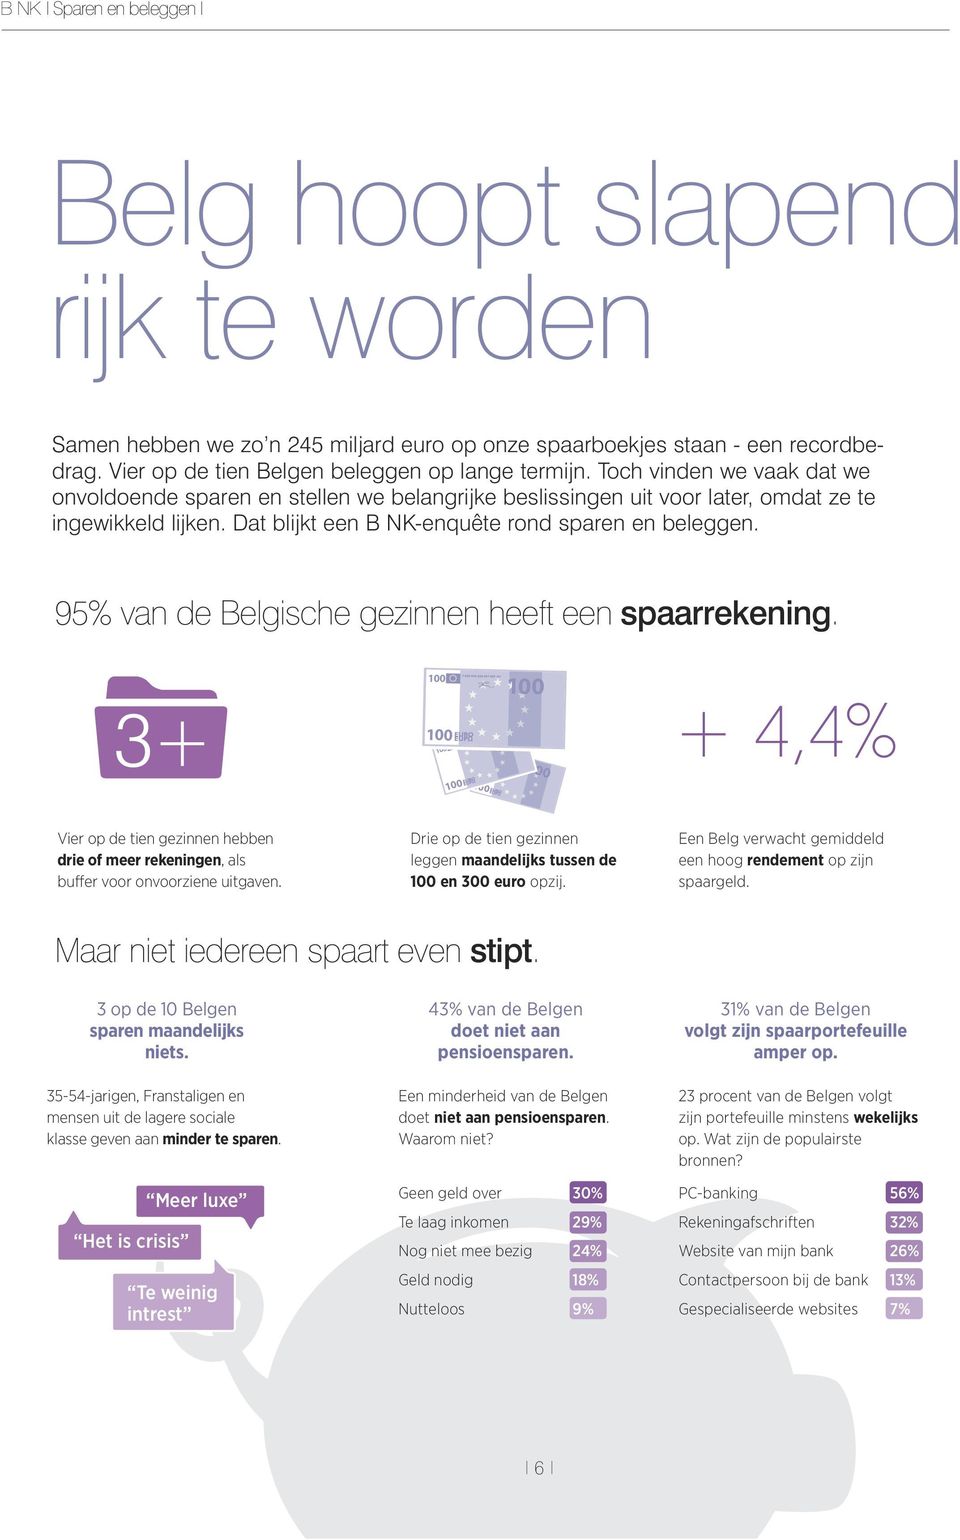 95% van de Belgische gezinnen heeft een spaarrekening. 3+ + 4,4% Vier op de tien gezinnen hebben drie of meer rekeningen, als buffer voor onvoorziene uitgaven.